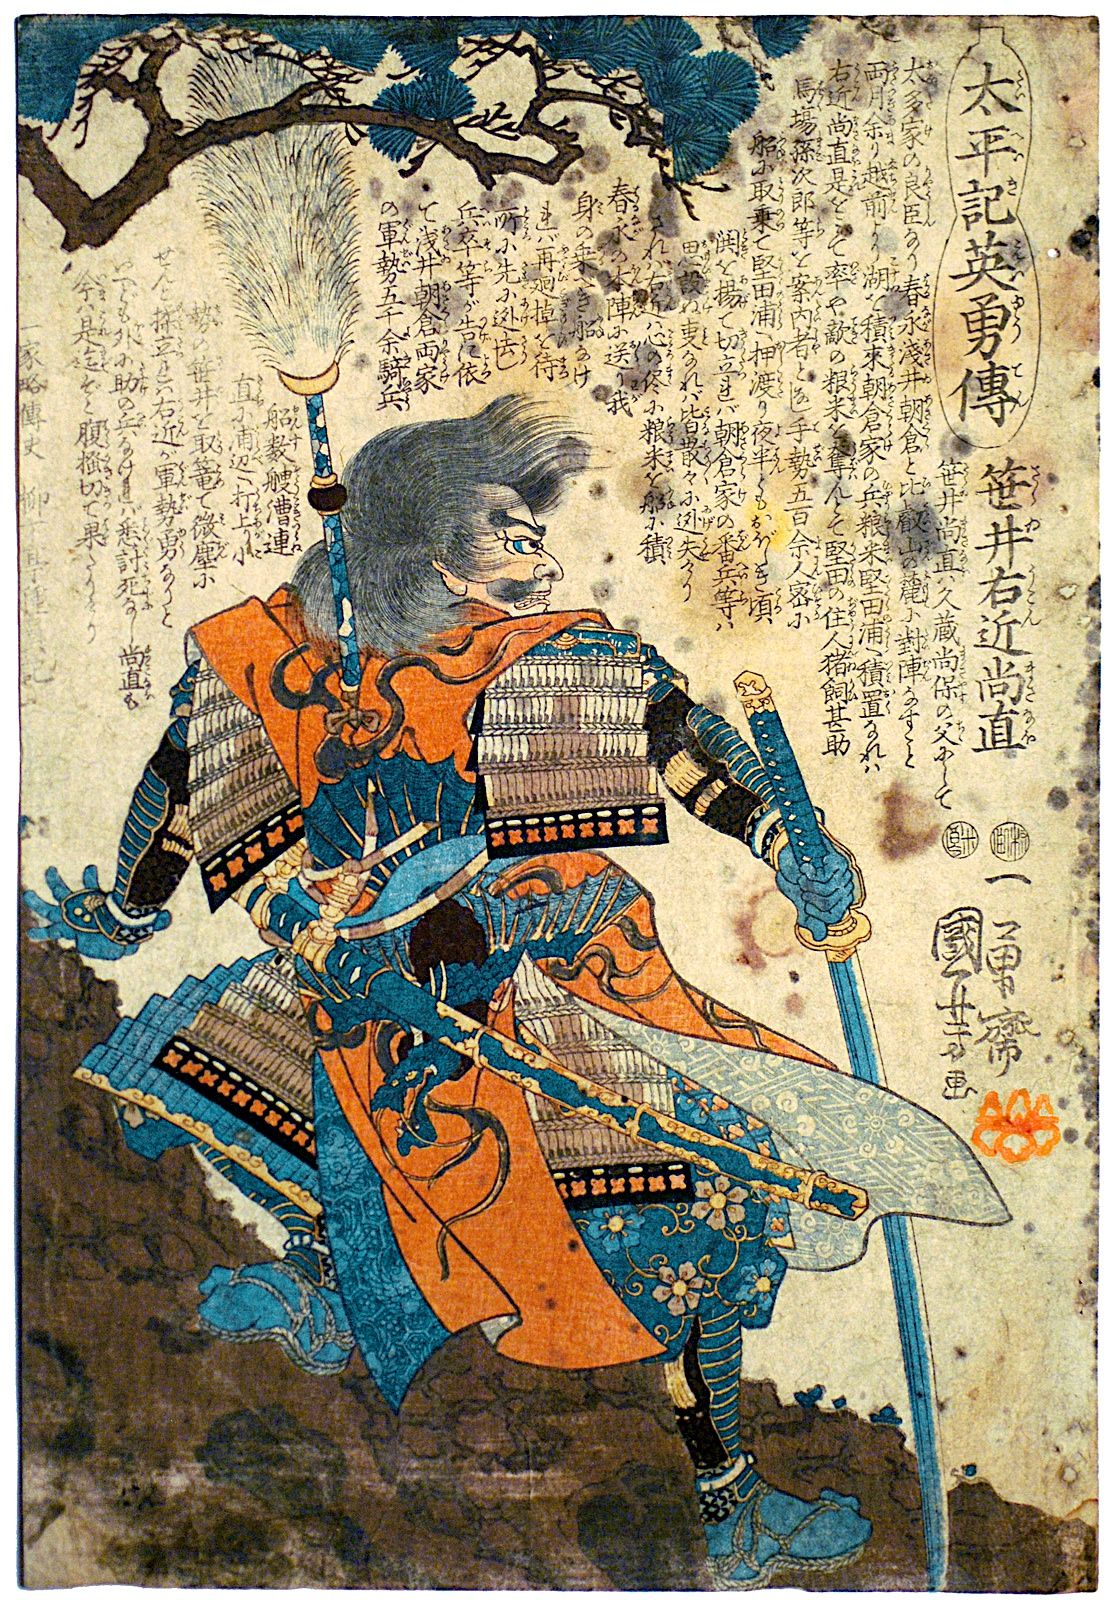 Japanese Samurai paintings